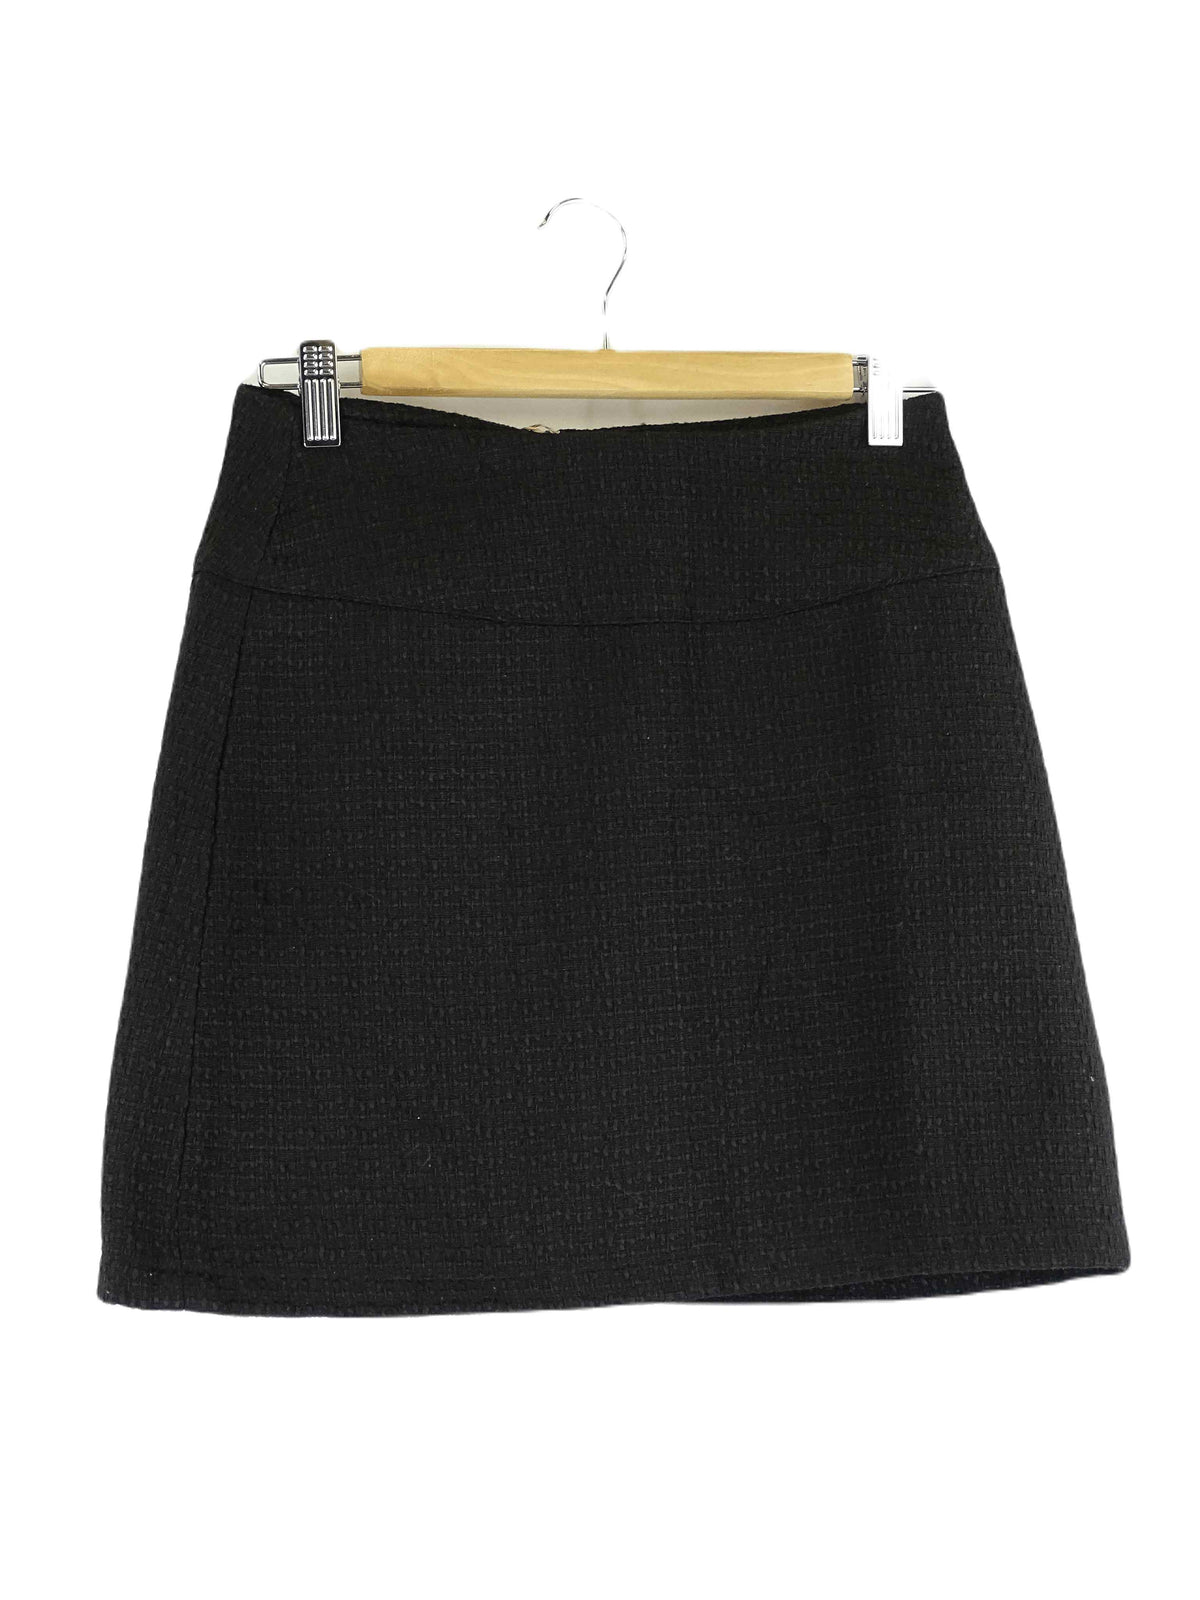 Belle &amp; Bloom Black Woven Skirt S